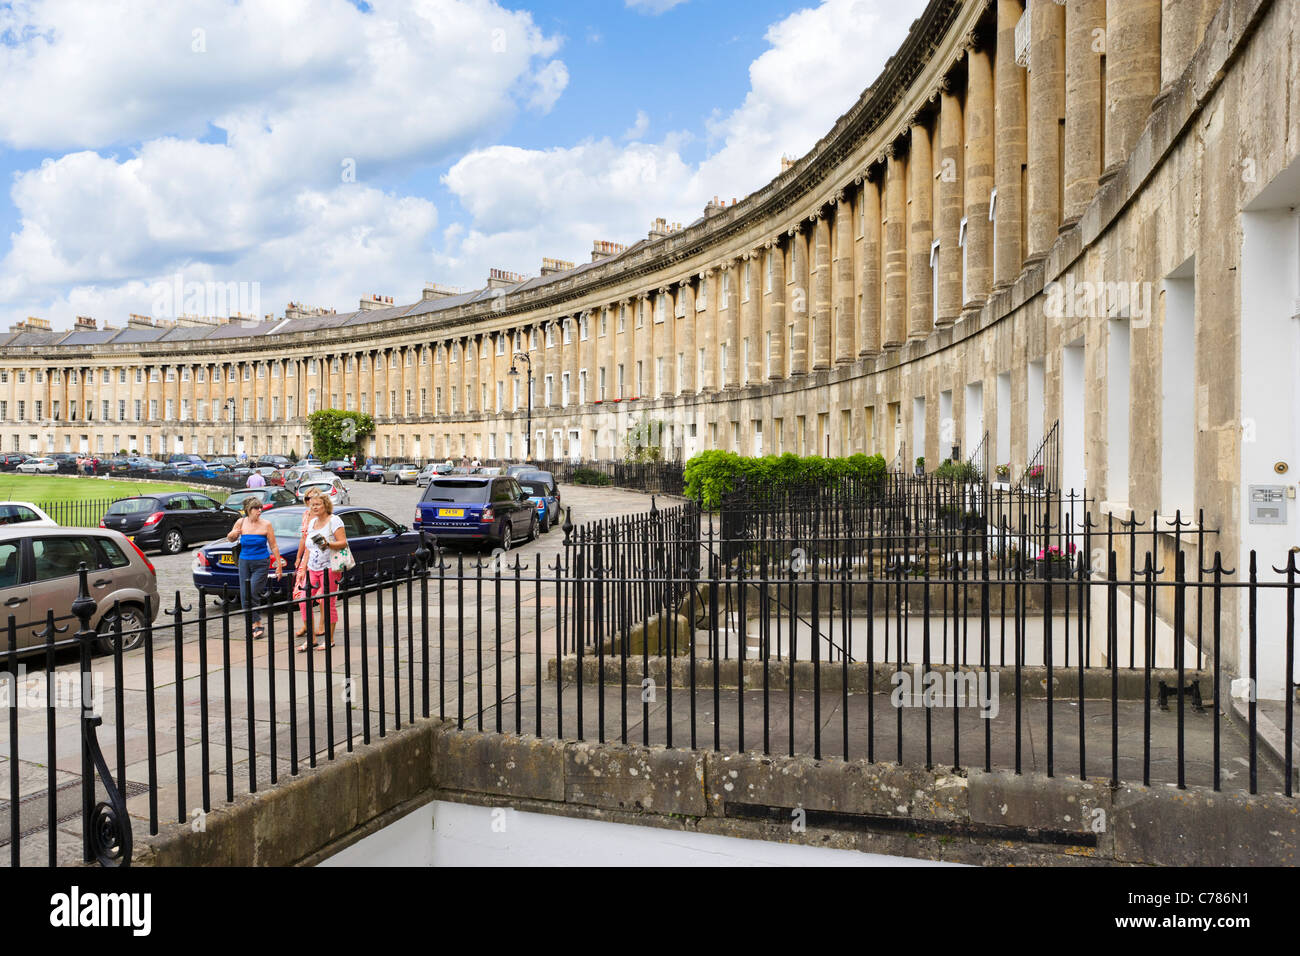 Royal Crescent, Bath, Somerset, England, UK Banque D'Images